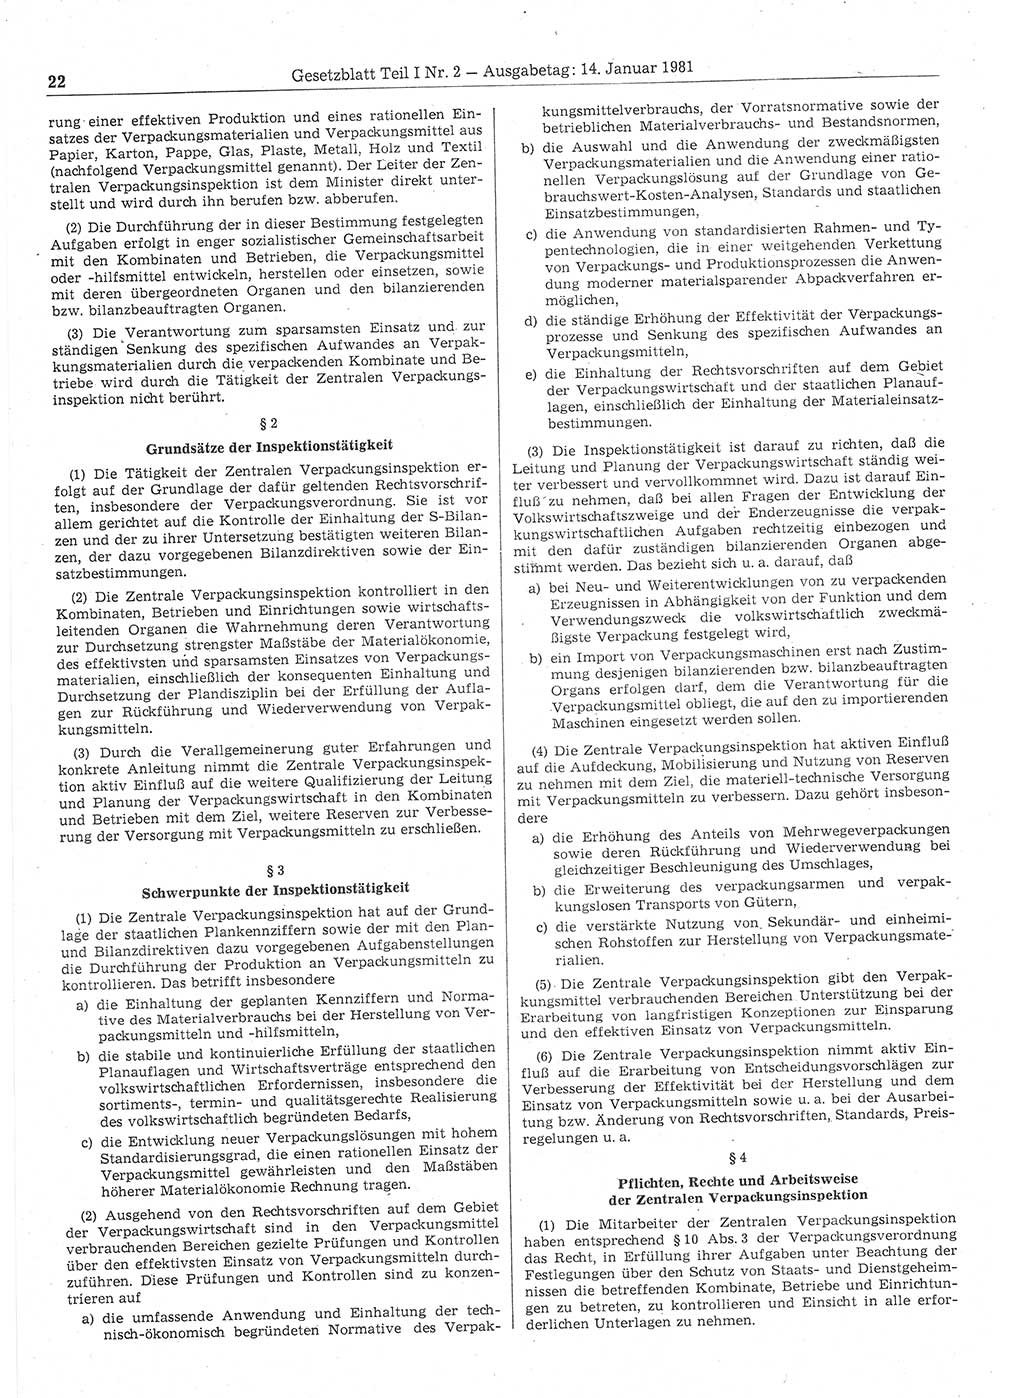 Gesetzblatt (GBl.) der Deutschen Demokratischen Republik (DDR) Teil Ⅰ 1981, Seite 22 (GBl. DDR Ⅰ 1981, S. 22)